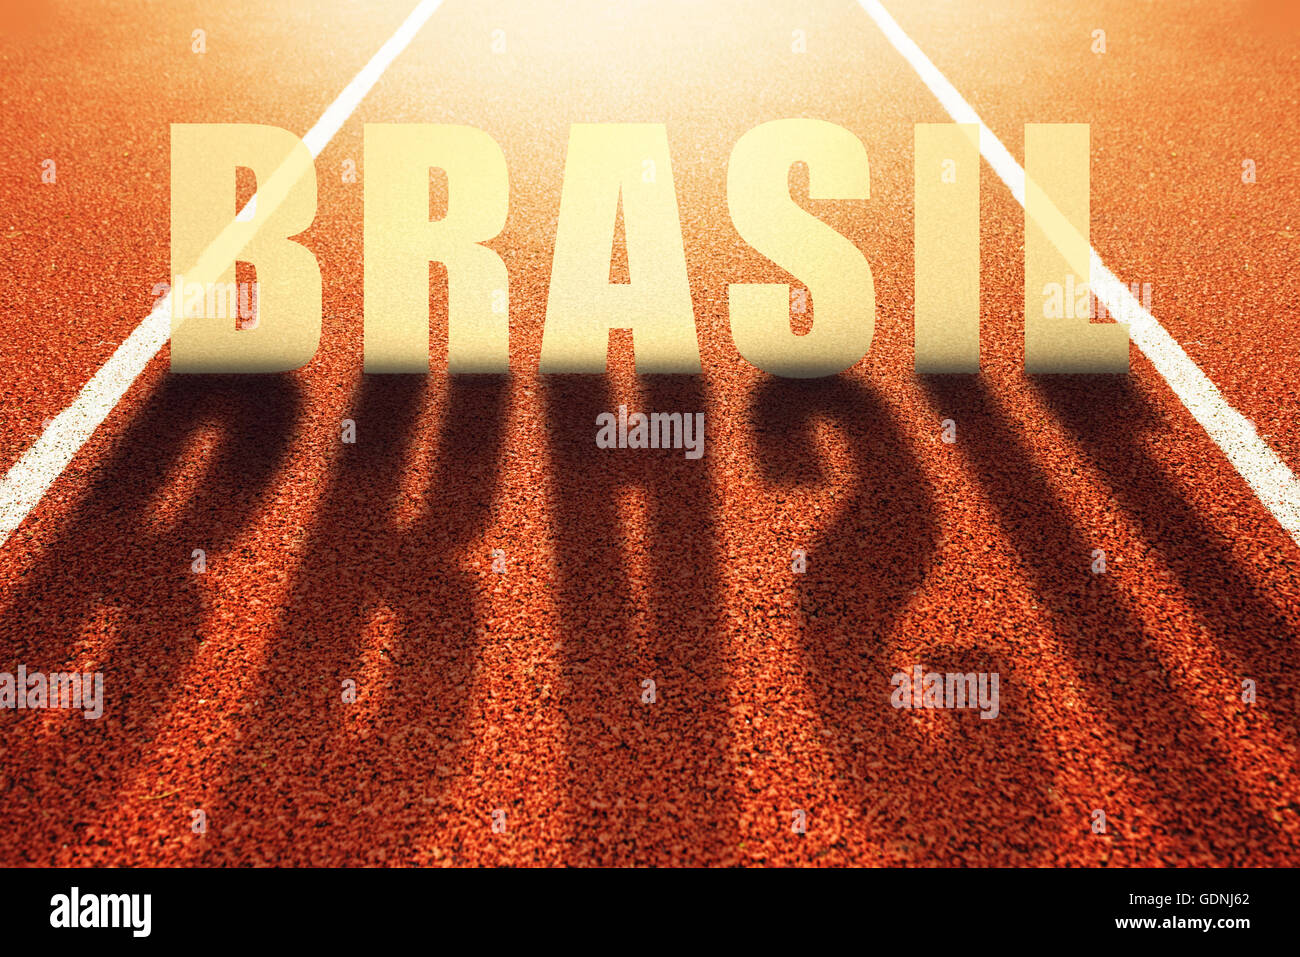 Brasil-Titel auf sportliche Laufbahn, Konzeptbild für Sport-Event in Brasilien stattfindet Stockfoto